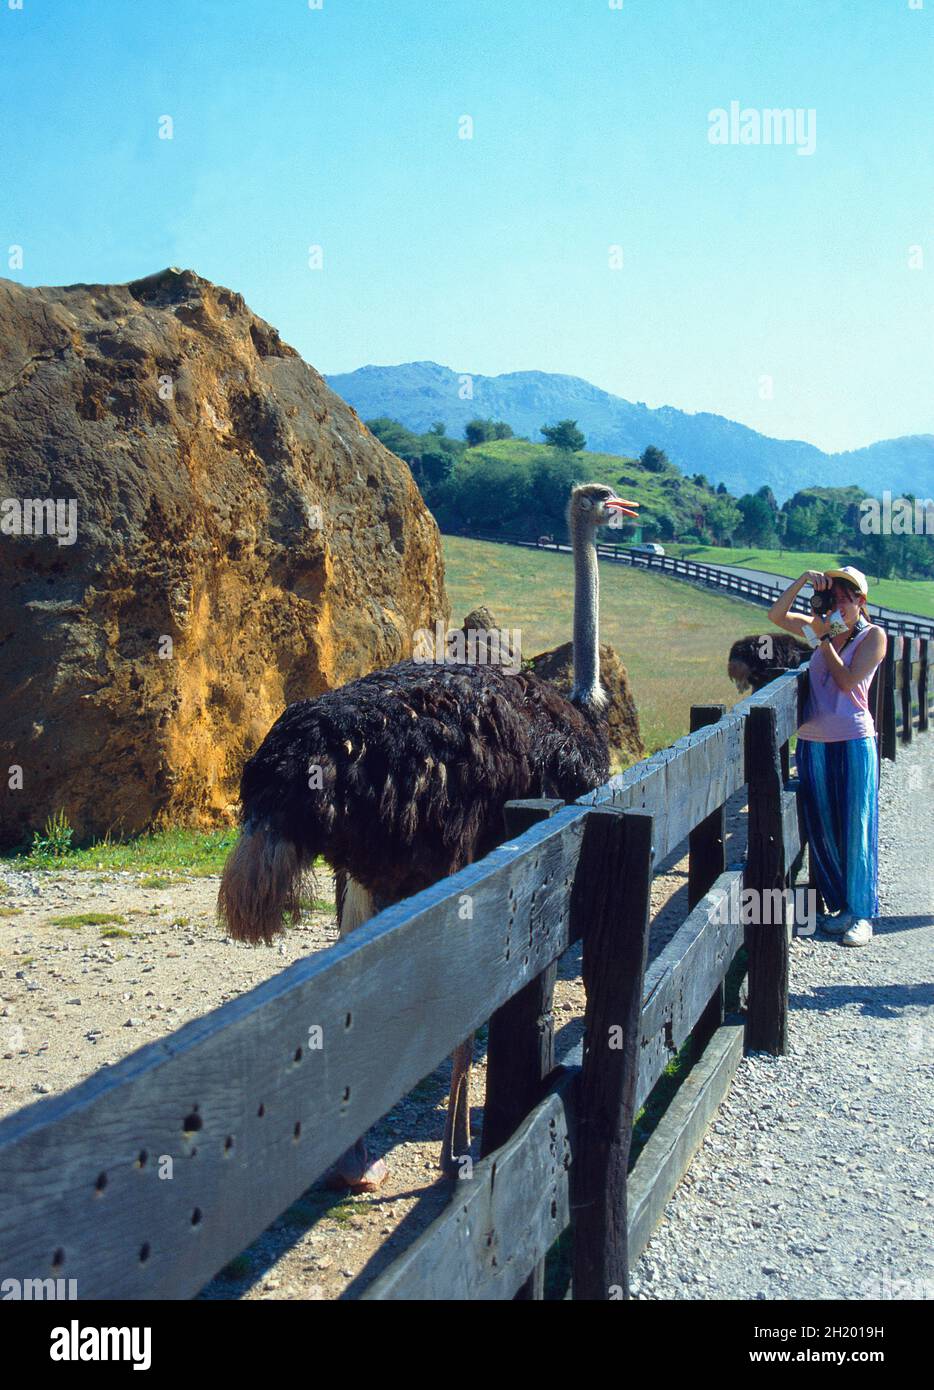 Femme prenant des photos d'un autruche.Réserve naturelle de Cabarceno, Cantabrie, Espagne. Banque D'Images